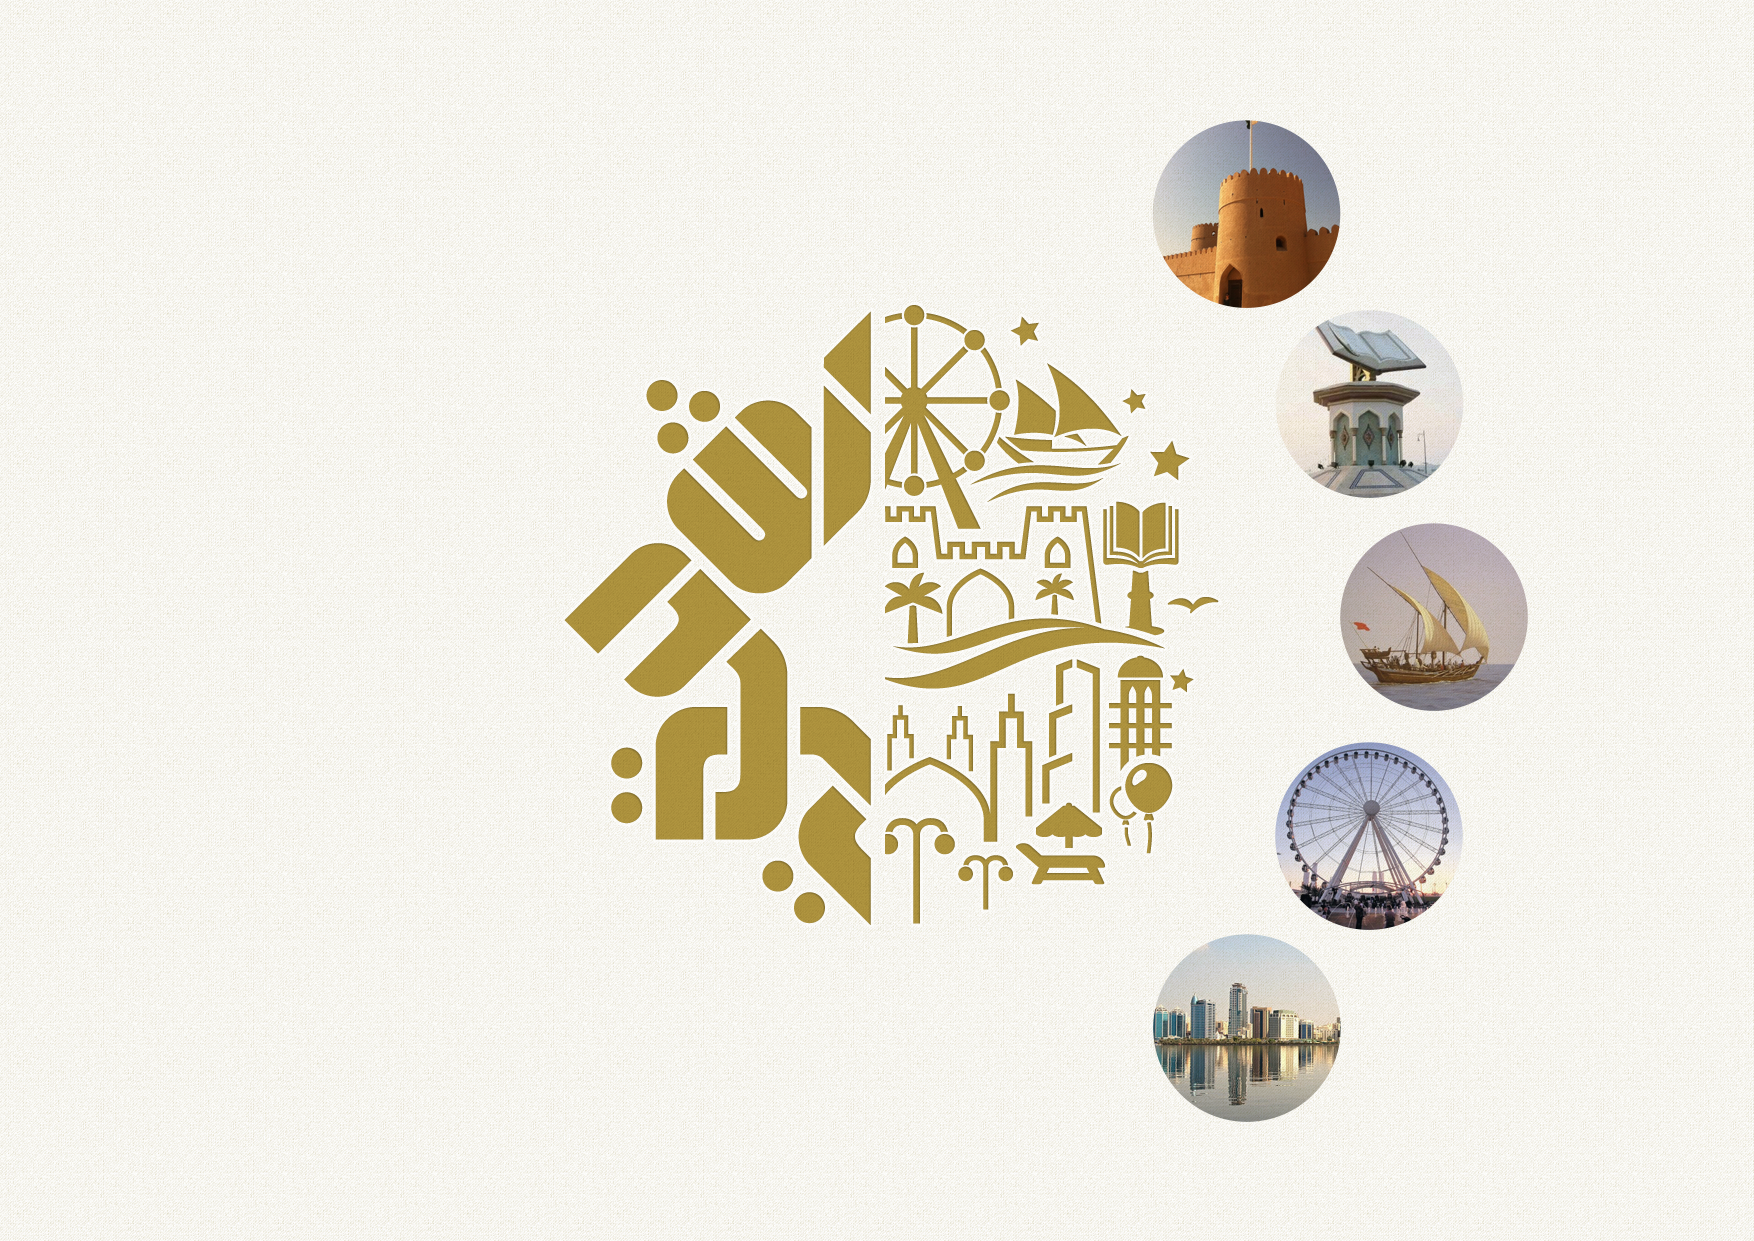 sharjah arab tourism capital logo